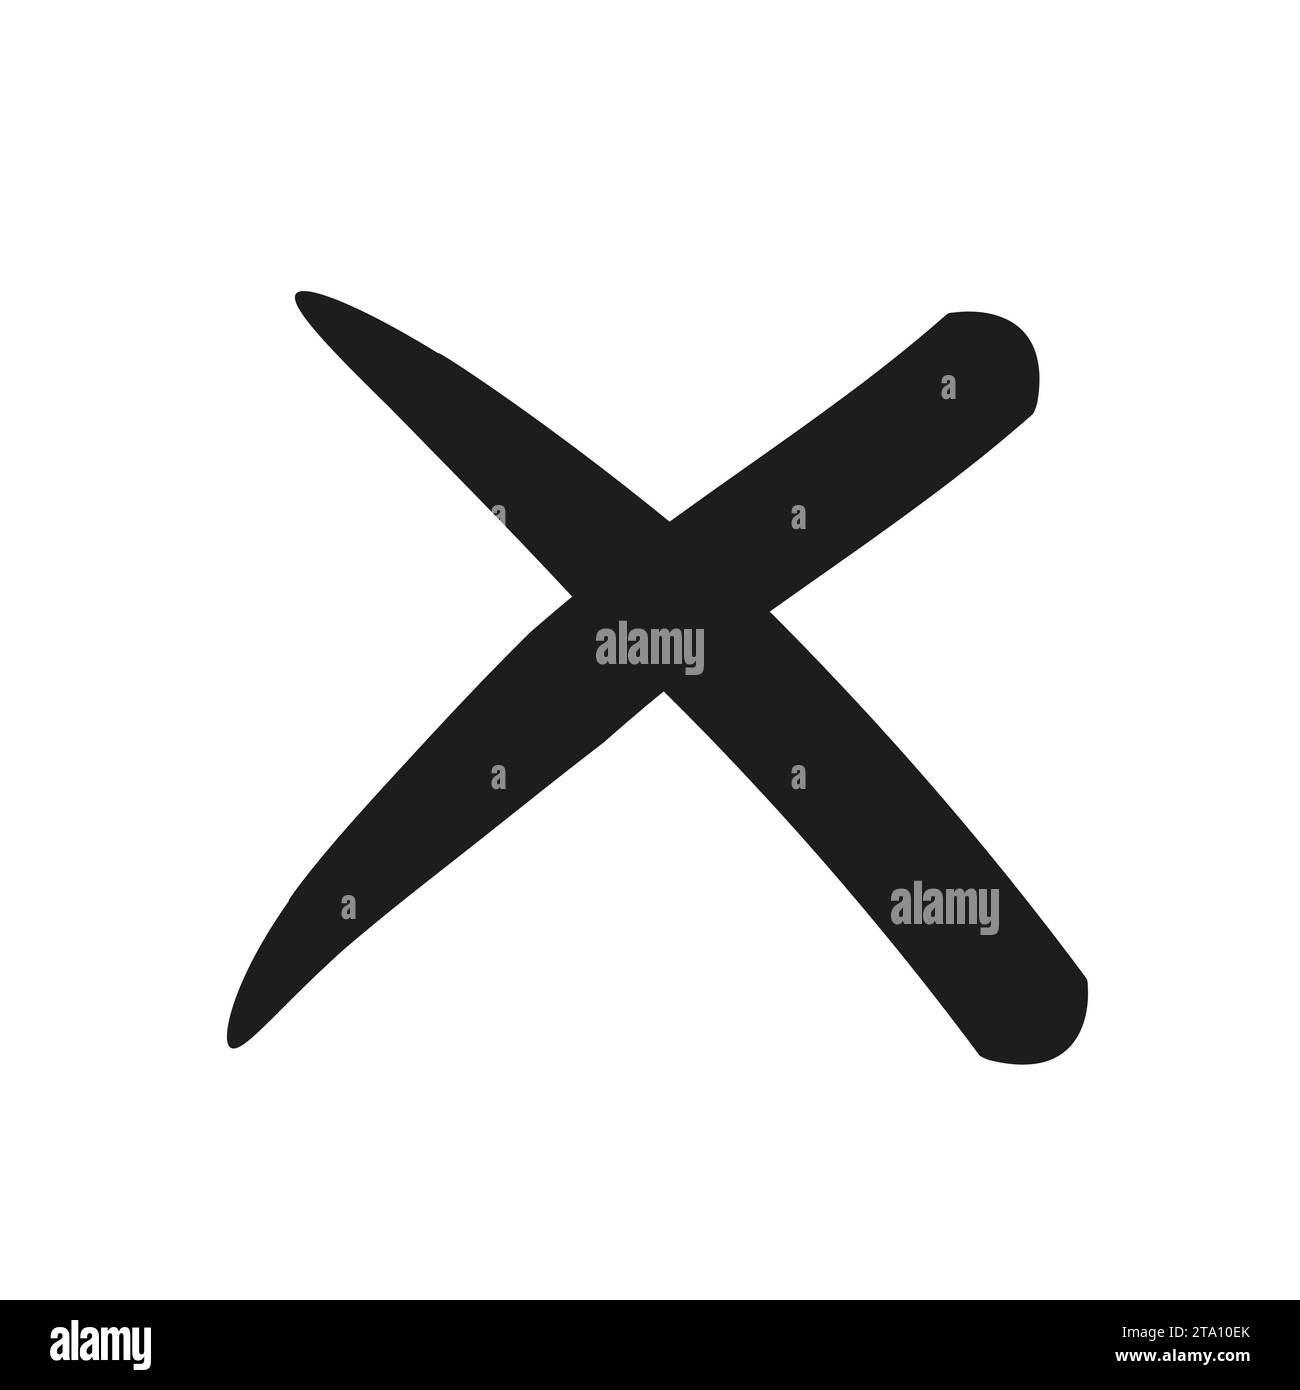 Segno X semplice. Illustrazione vettore simbolo X barrato. Elemento di design incrociato per annullare, rifiutare e rifiutare qualcosa. Illustrazione Vettoriale